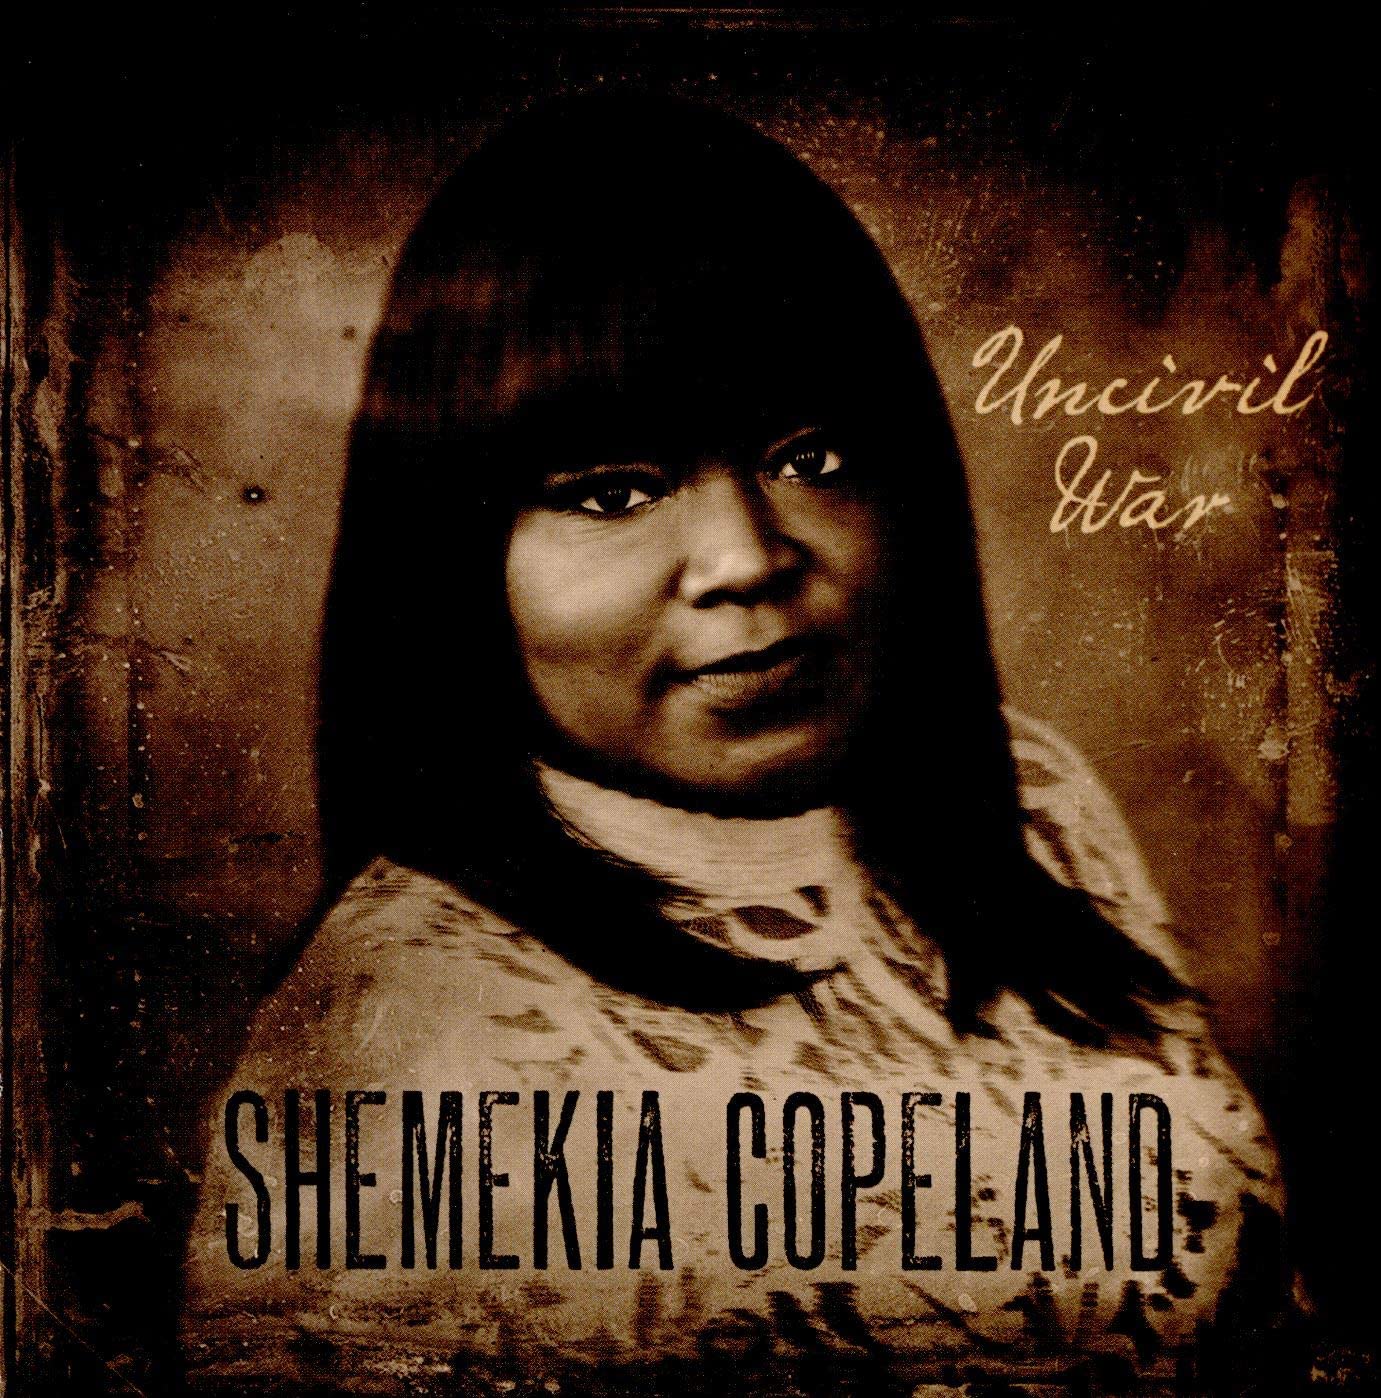 Shemekia Copeland - Uncivil War - CD